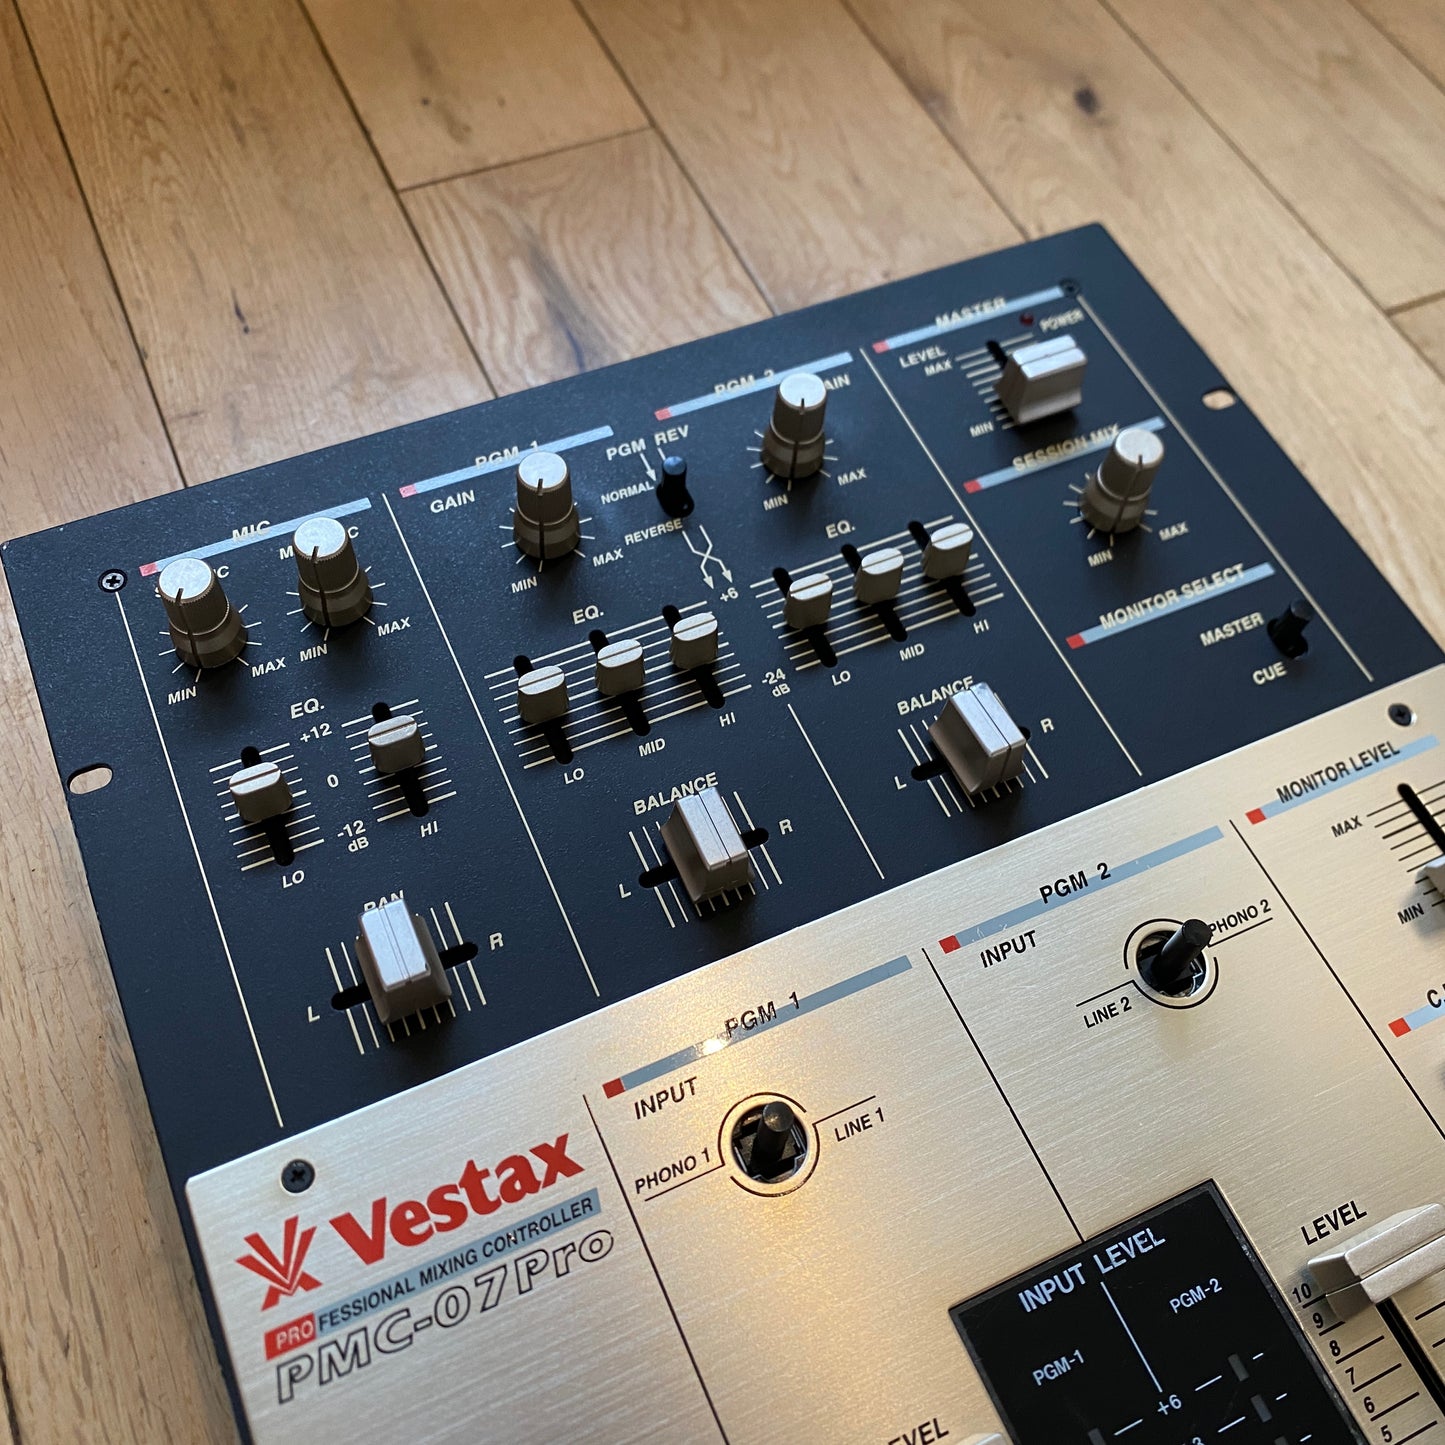 Vestax PMC-07 Pro MixerRemix Serviced Mixer DJ Prime Cuts / Excel